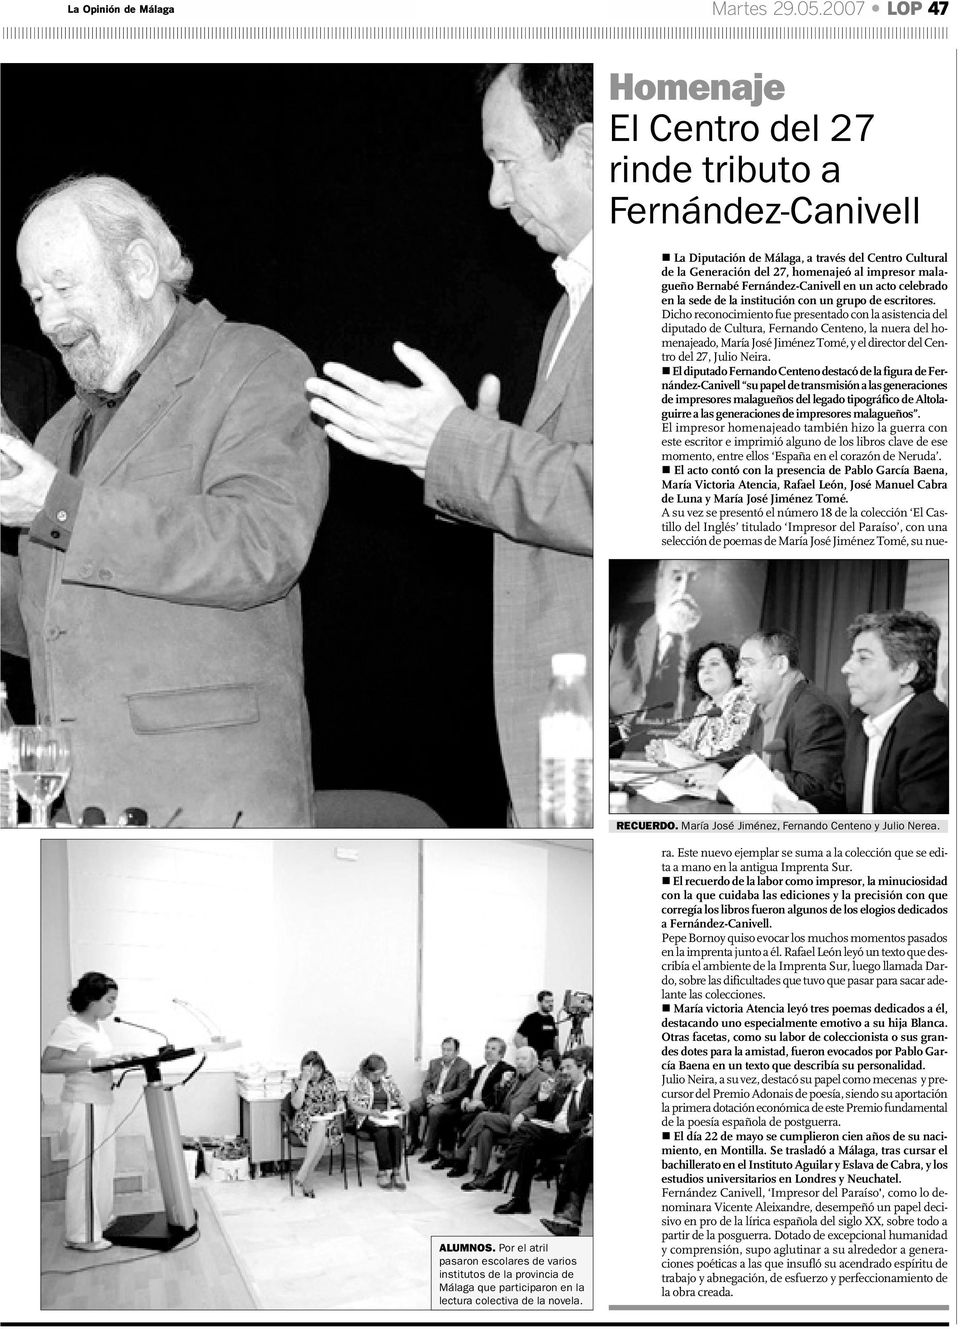 La Diputación de Málaga, a través del Centro Cultural de la Generación del 27, homenajeó al impresor malagueño Bernabé Fernández-Canivell en un acto celebrado en la sede de la institución con un